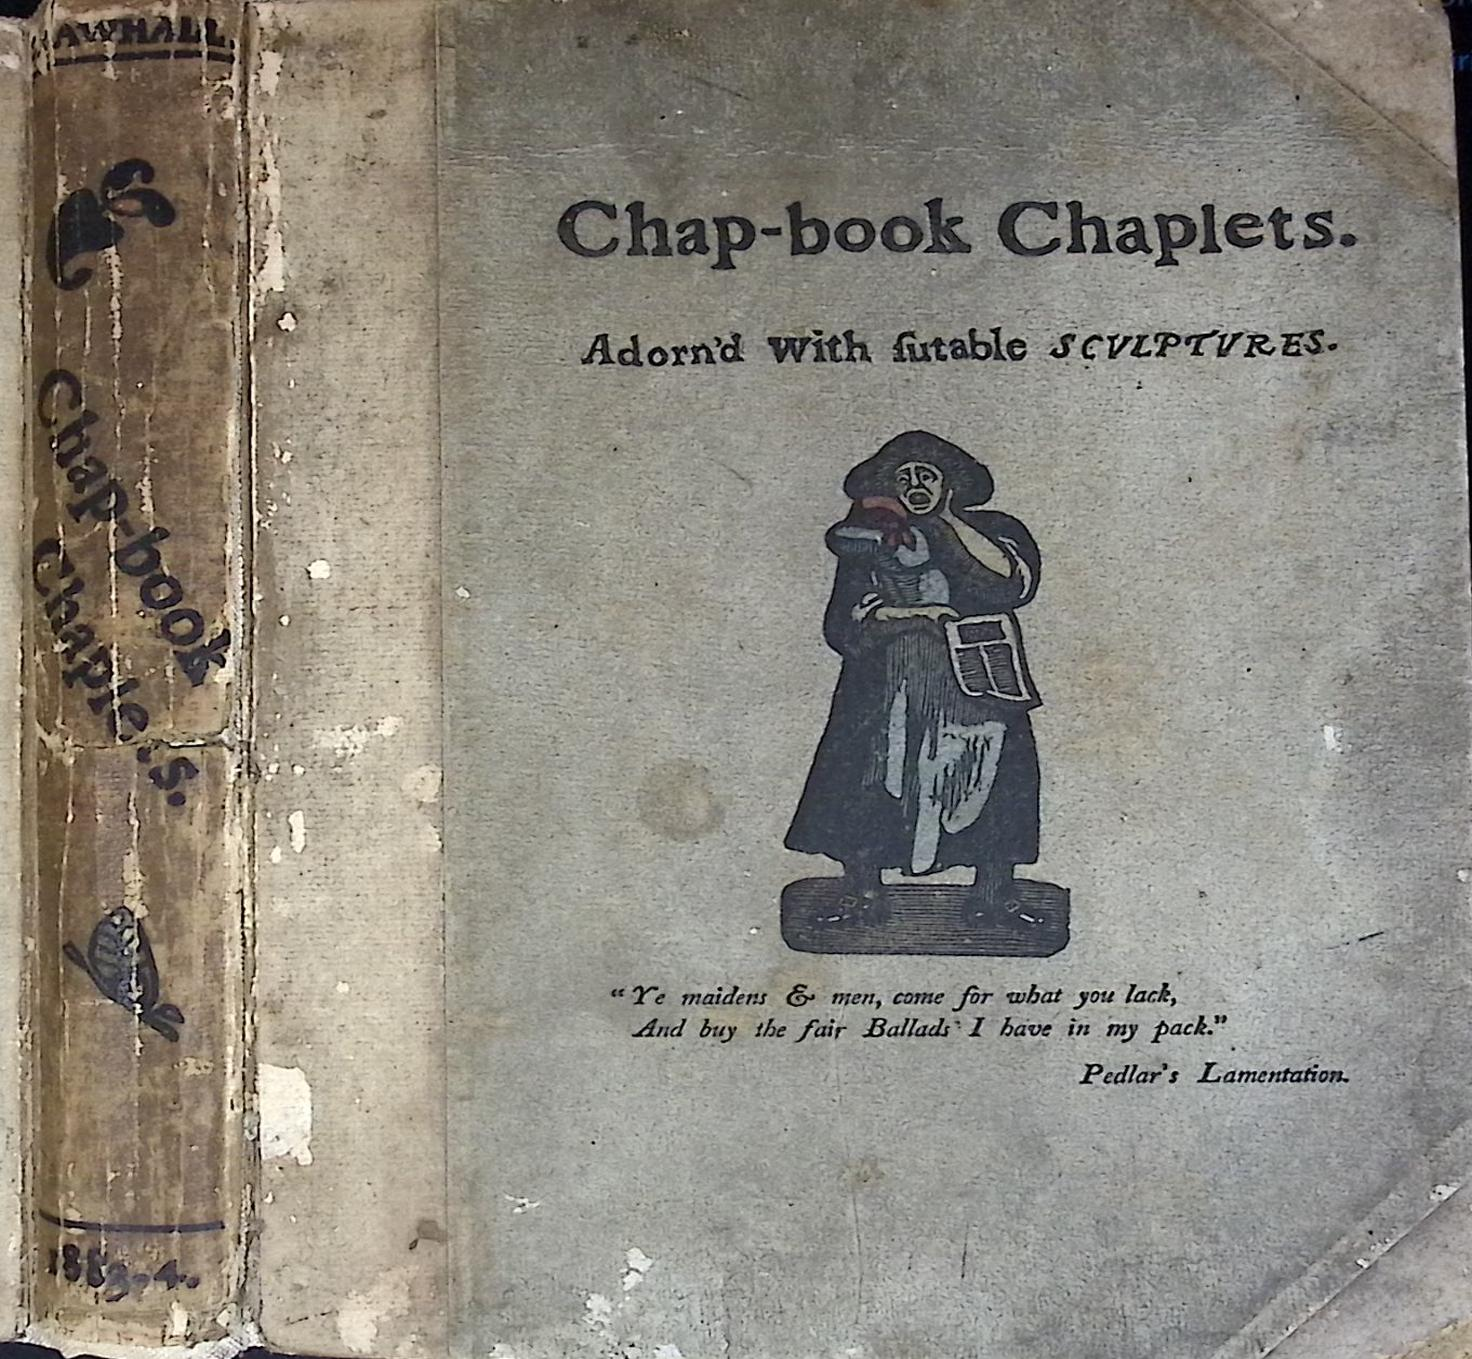 Chap-book Chaplets